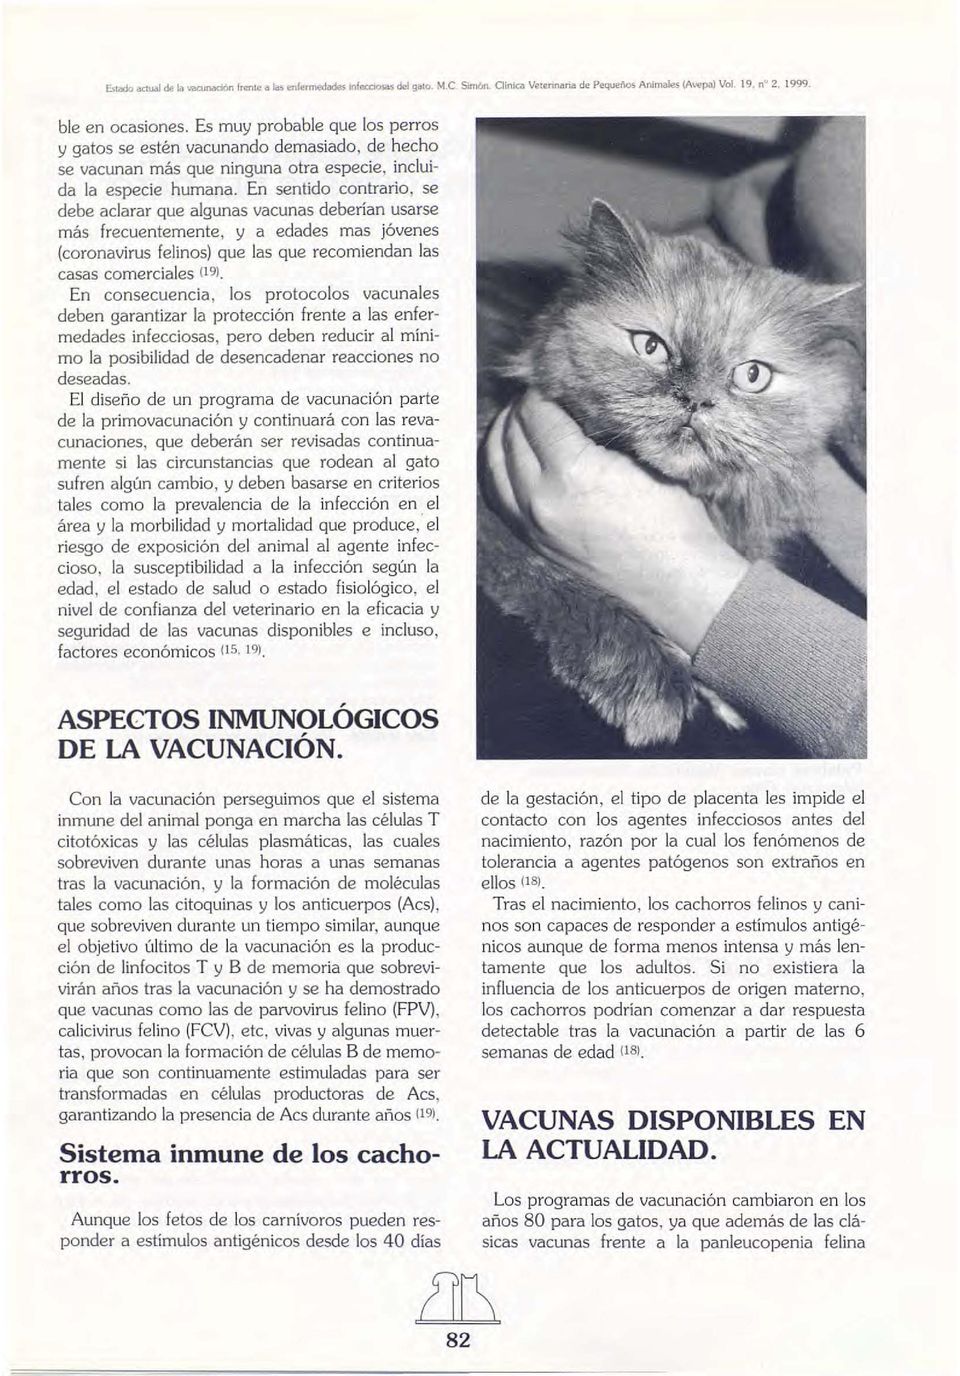 En sentido contrario, se debe aclarar que algunas vacunas deberían usarse más frecuentemente, y a edades mas jóvenes (coronavirus felinos) que las que recomiendan las casas comerciales (19).